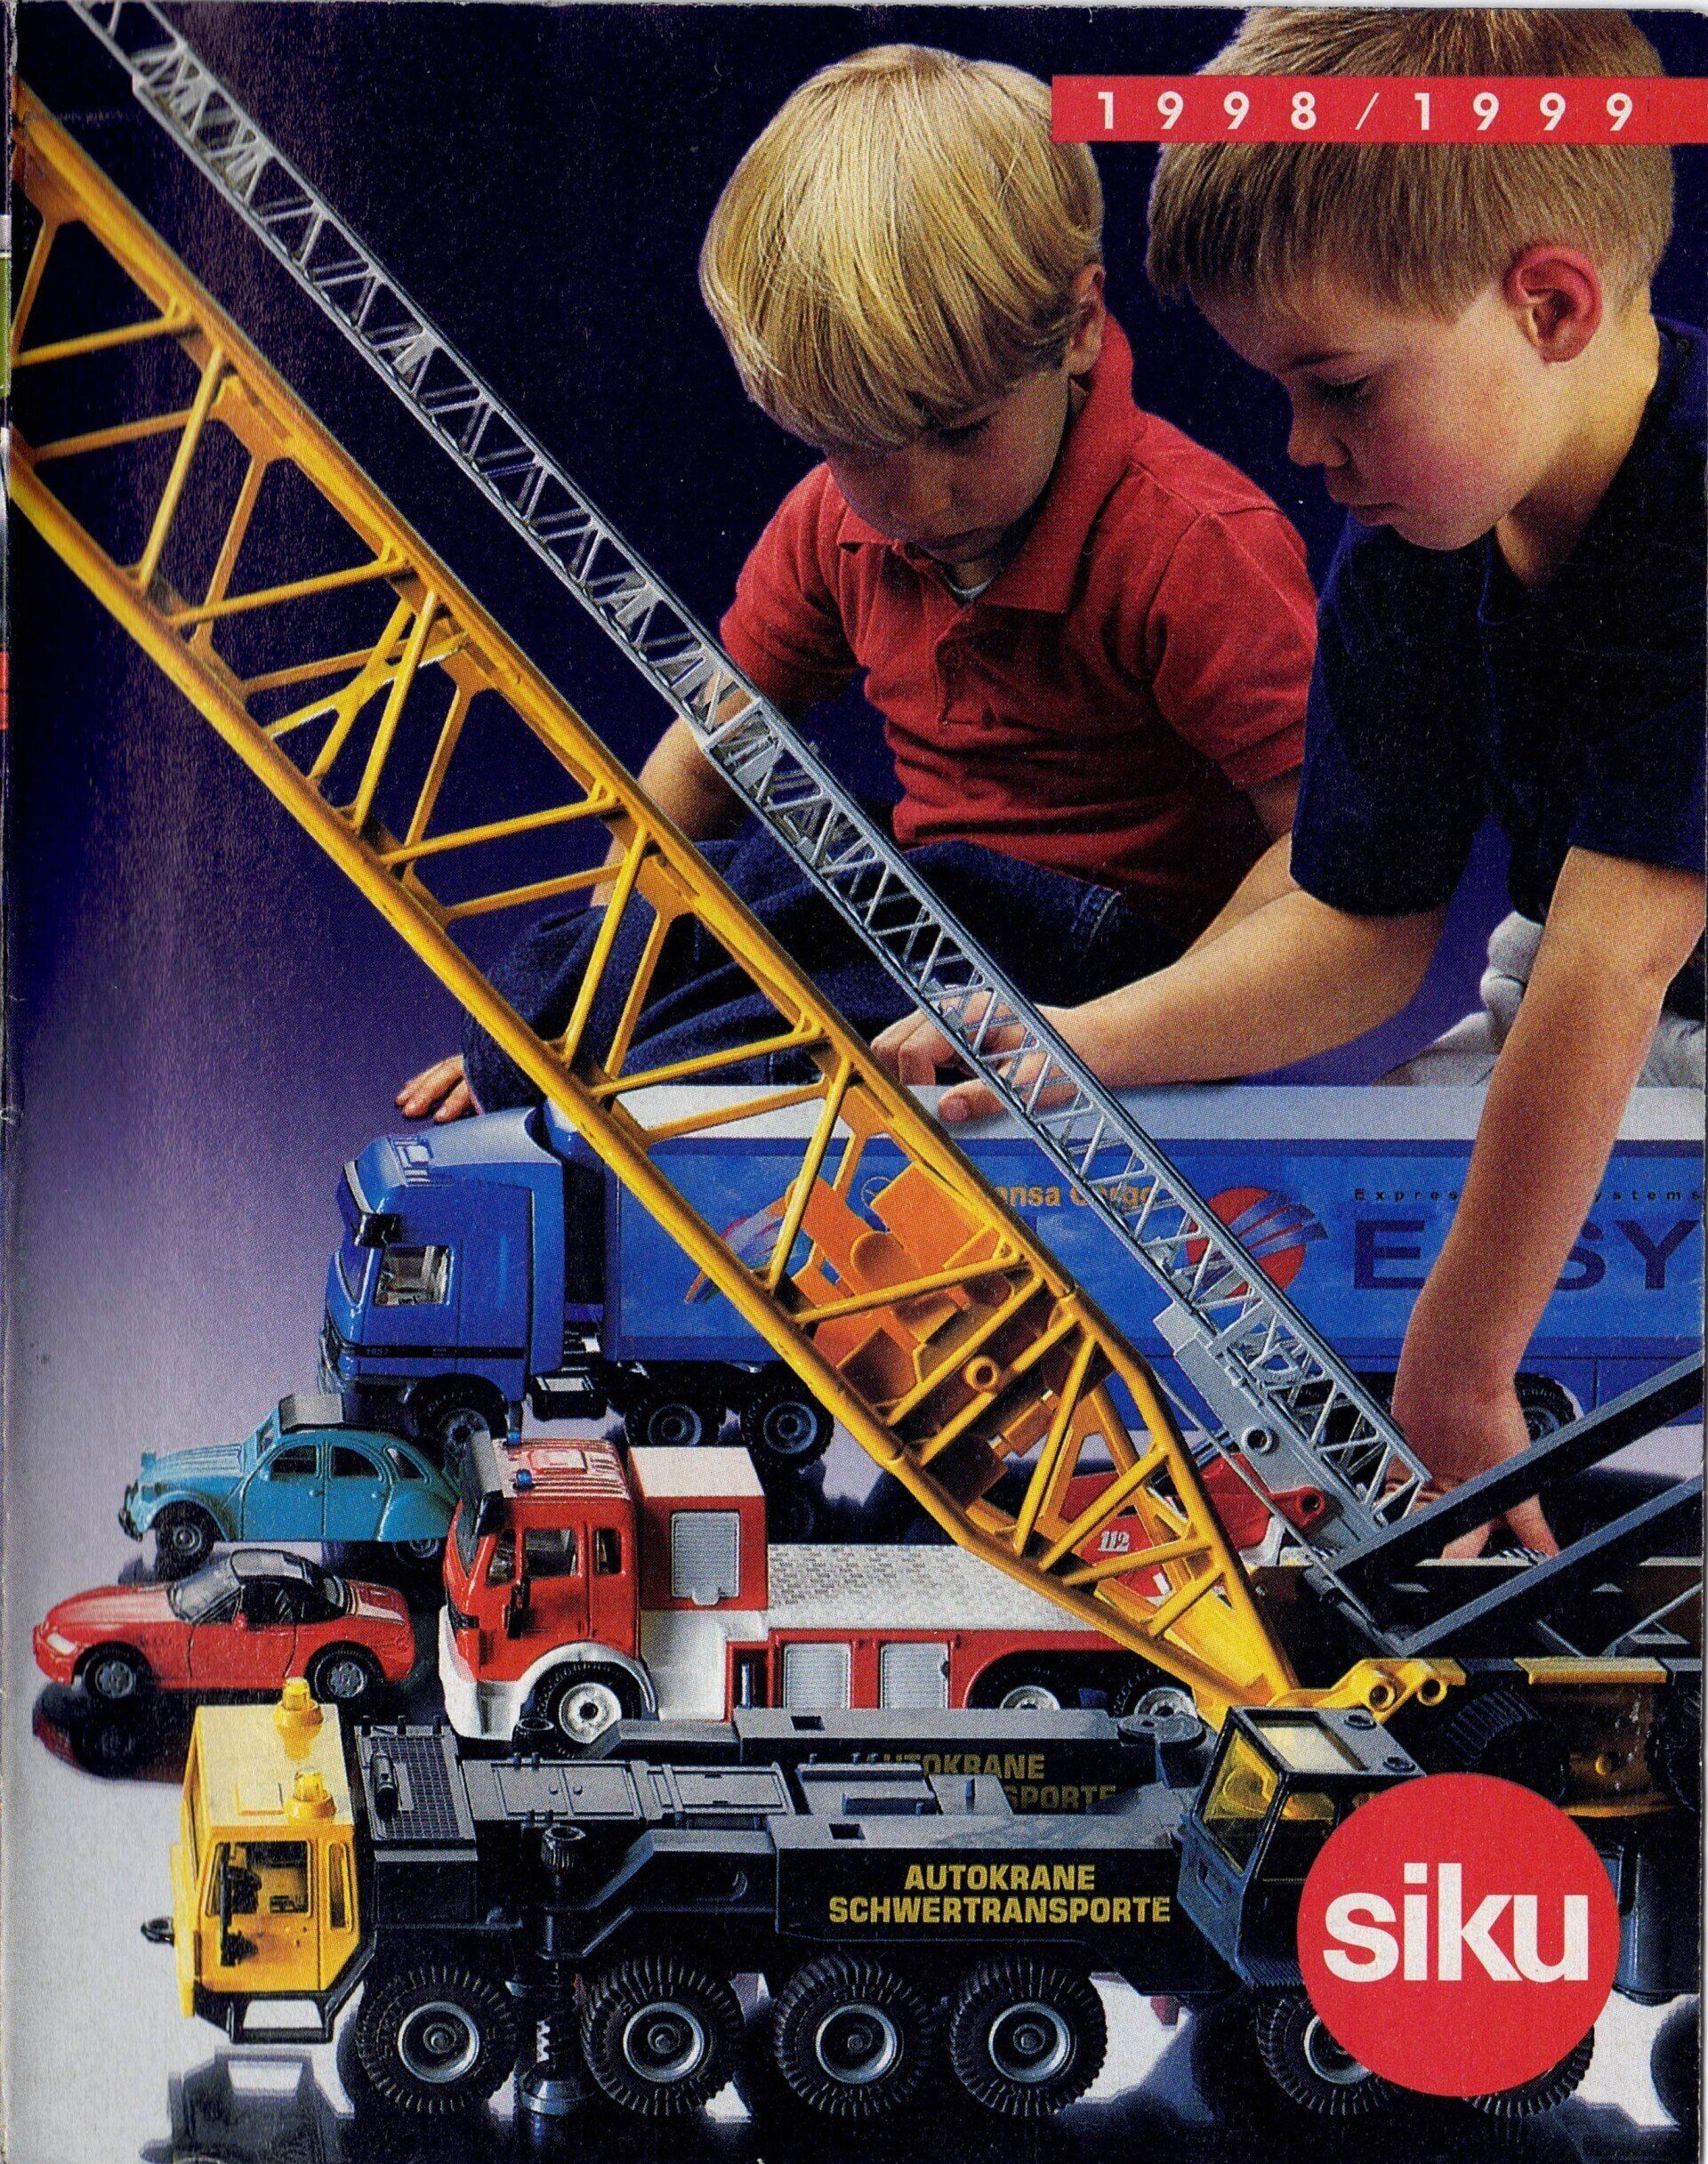 Siku Catalogue 1998-99